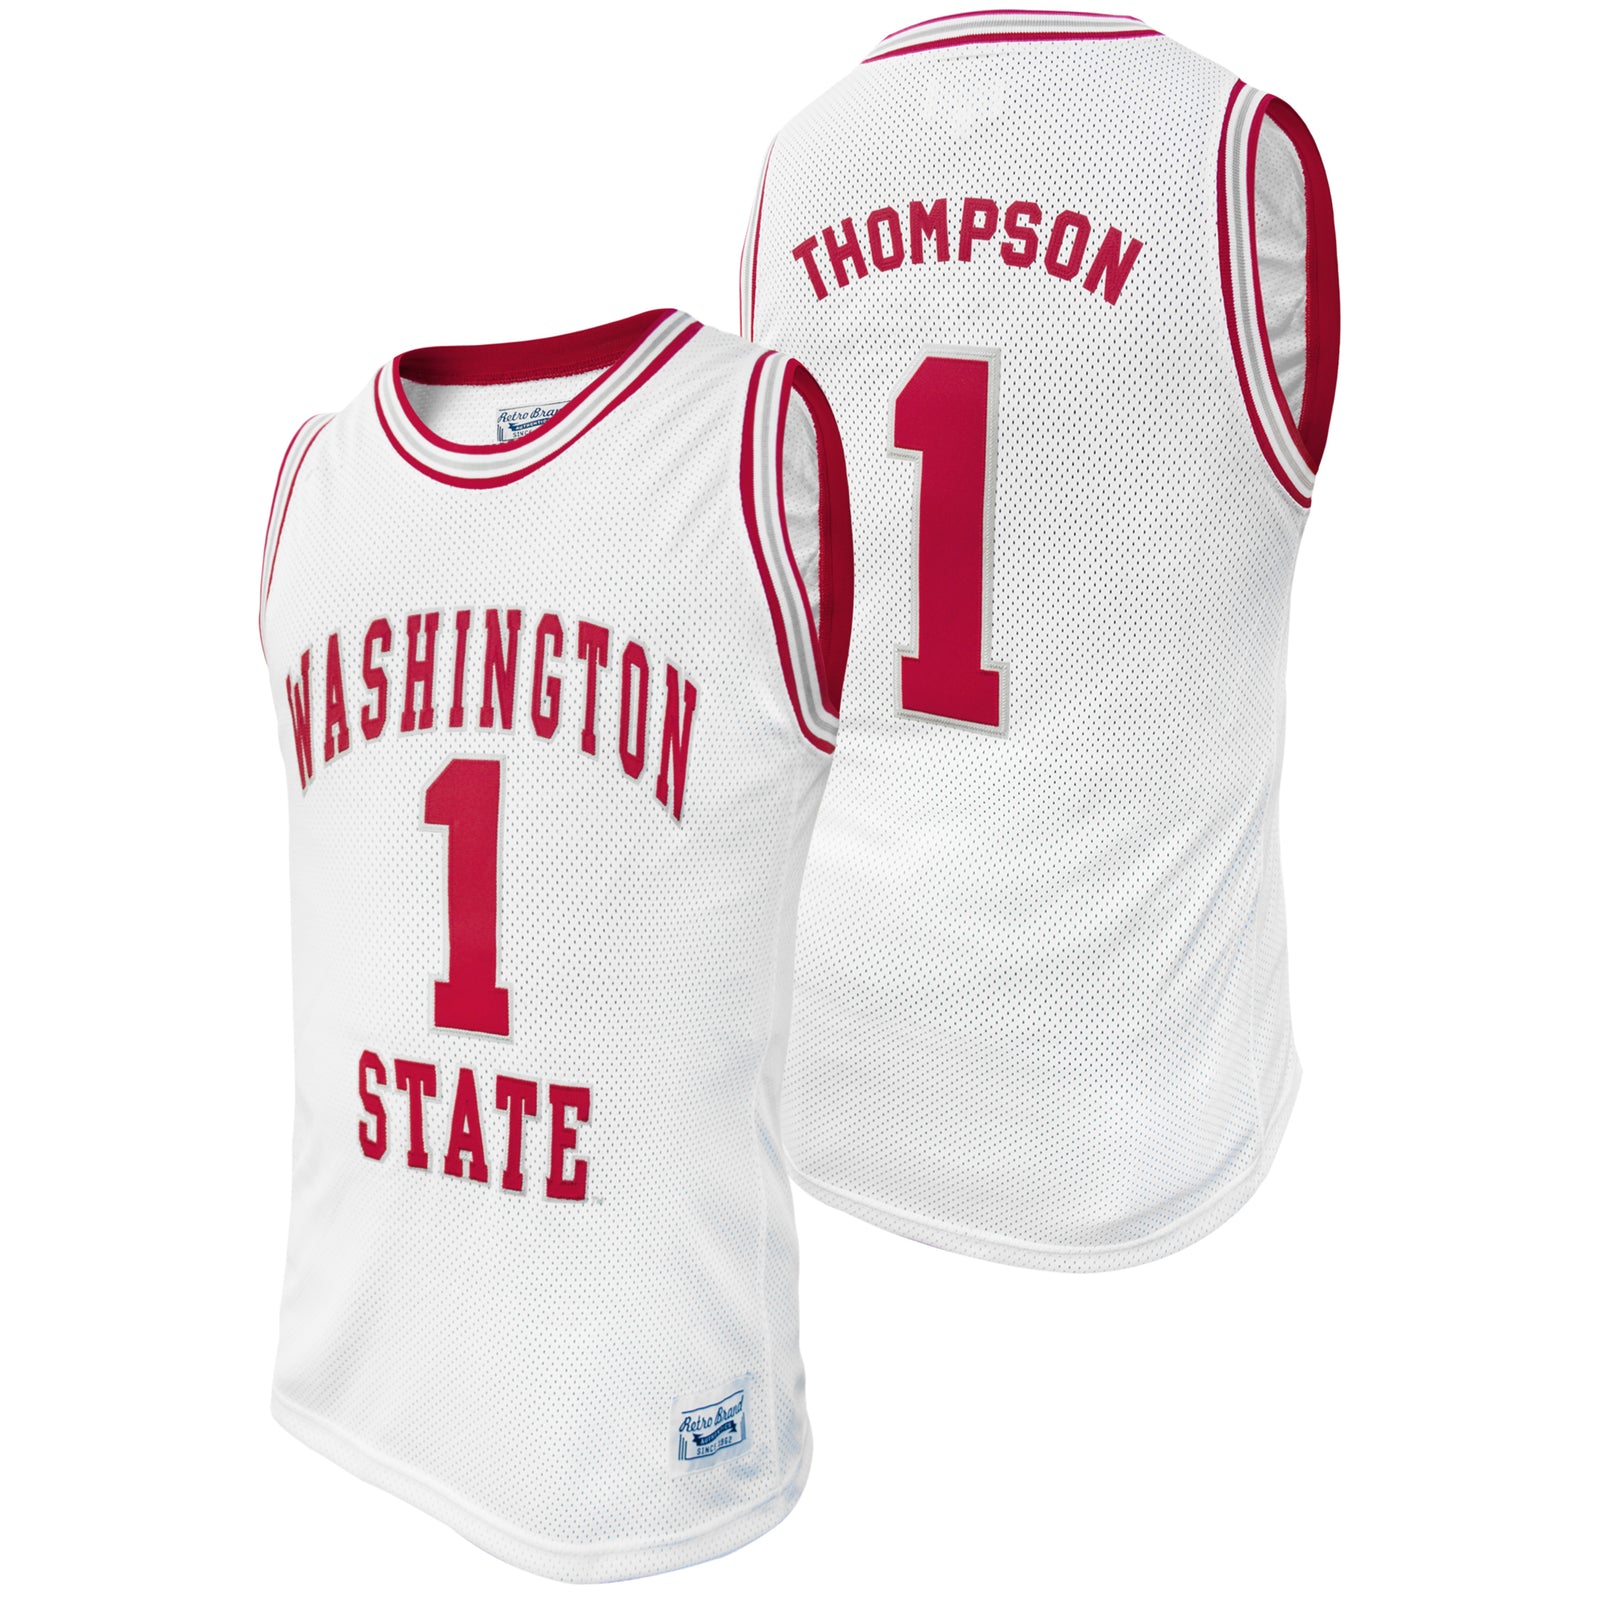 Washington State University Klay Thompson Throwback Jersey